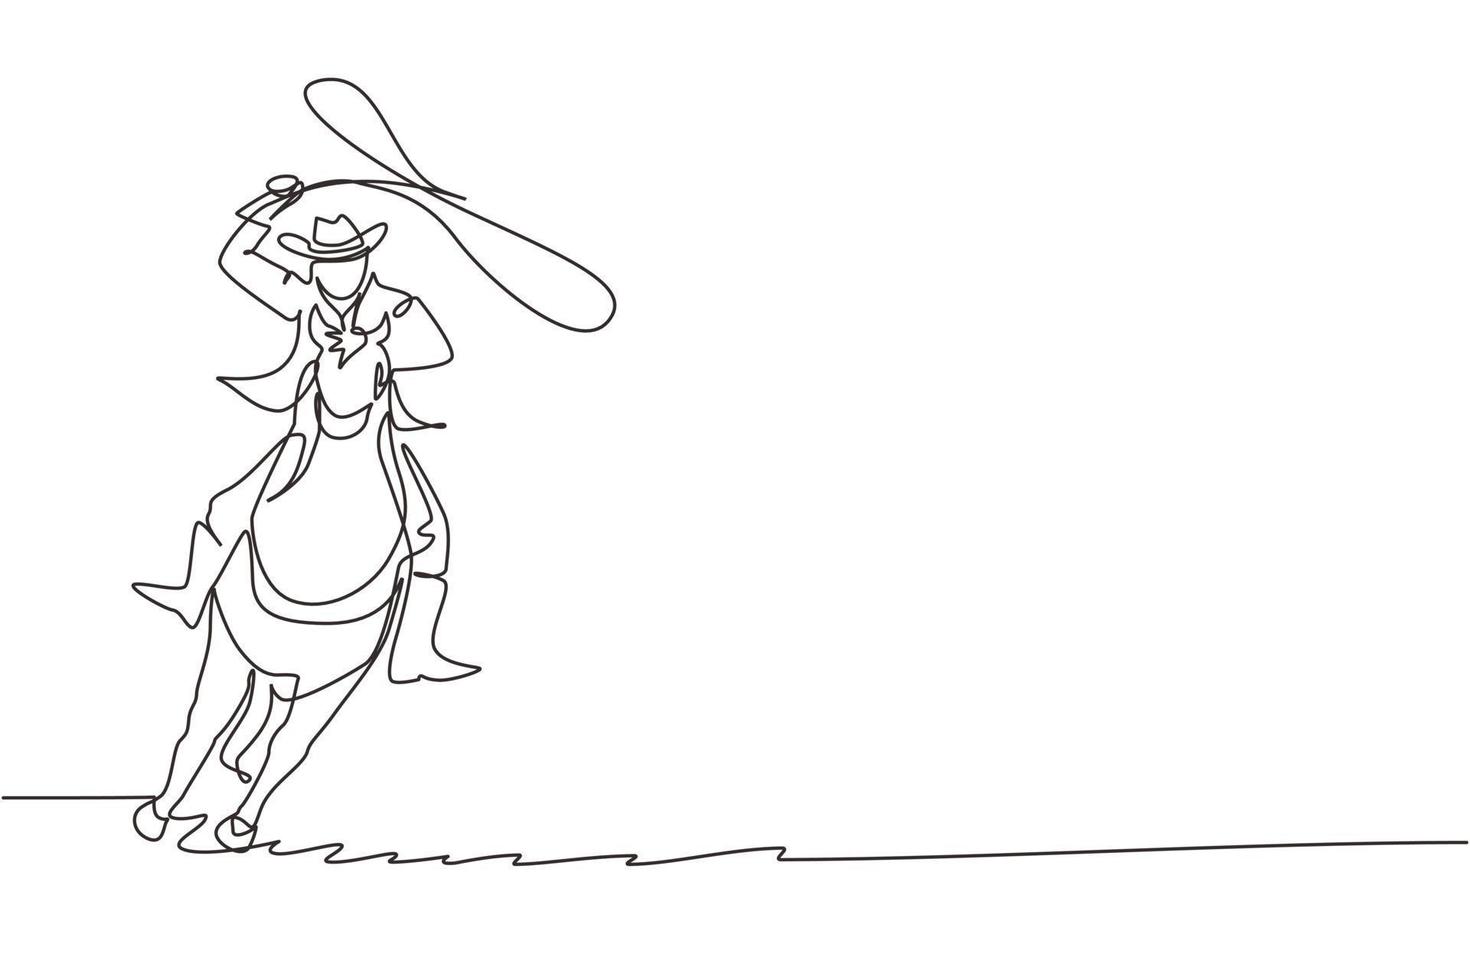 vaquero de dibujo continuo de una línea con lazo de cuerda a caballo. vaquero americano montando a caballo y lanzando lazo. vaquero en caballo tronzado corriendo con lazo. ilustración gráfica de vector de diseño de línea única